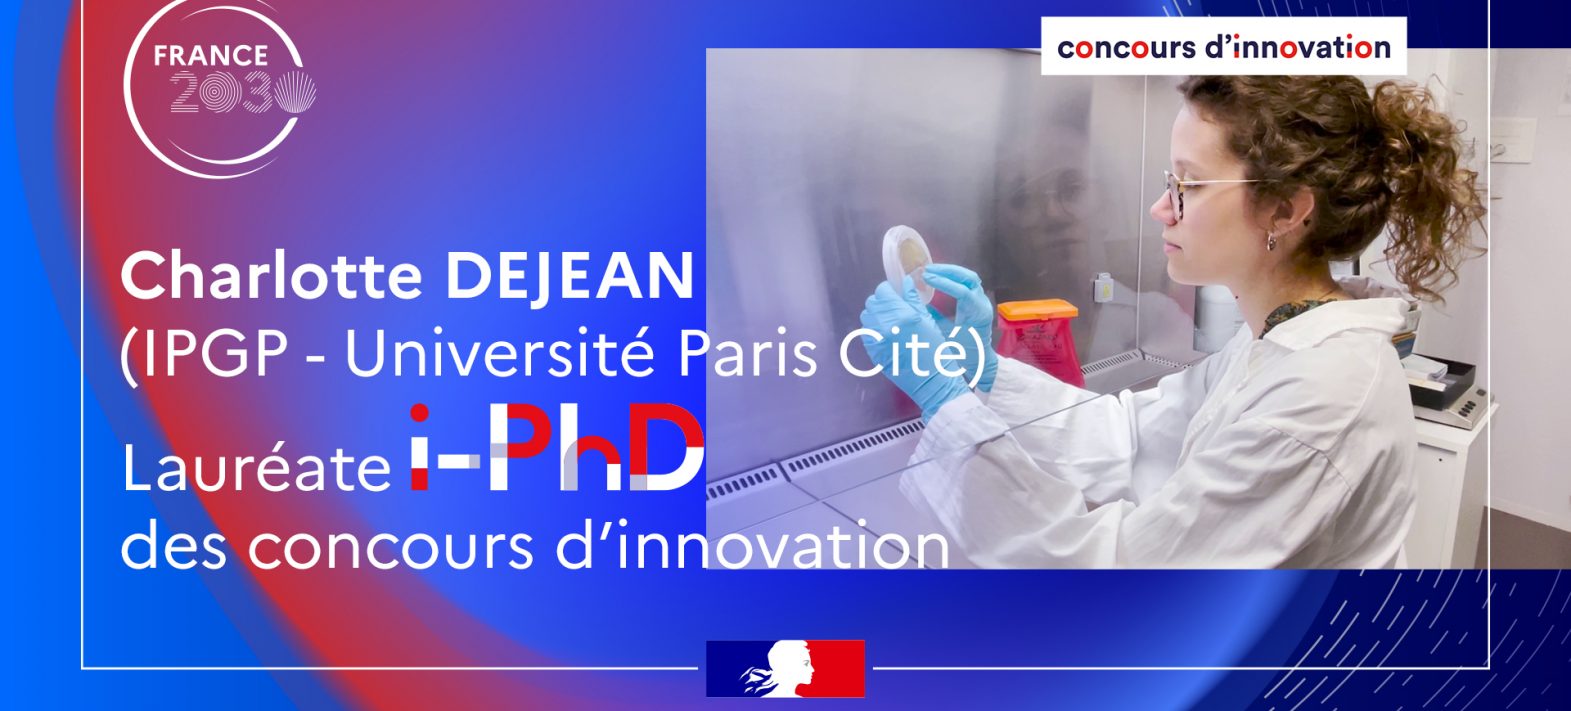 Charlotte Dejean, lauréate 2023 du concours innovation i-PhD de Bpifrance